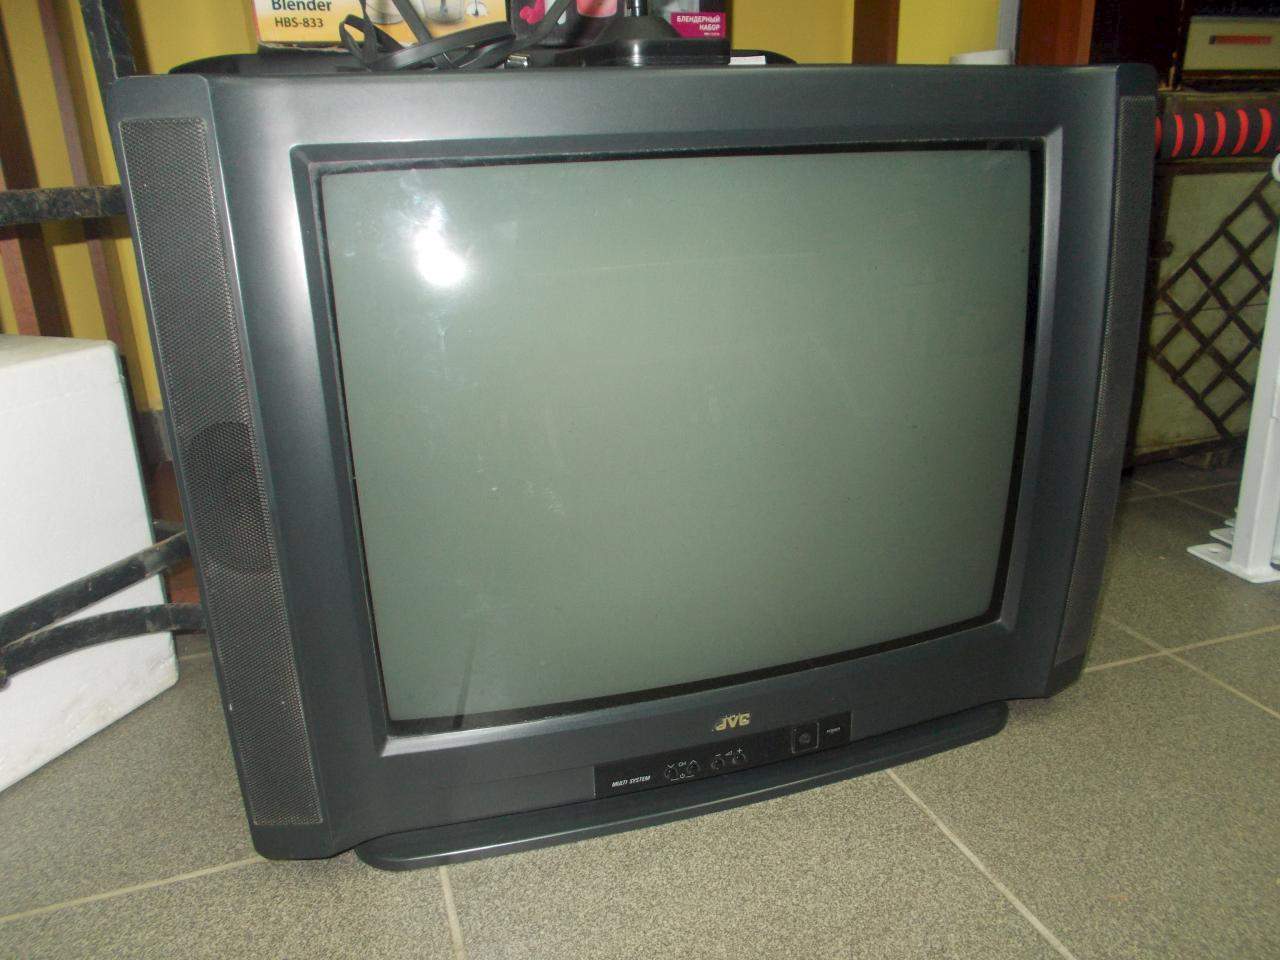 Продать телевизор спб. Daewoo 14 дюймов кинескопный. Телевизор Sharp ЭЛТ 21 дюйм. LG ЭЛТ 14 дюймов. Телевизор LG 14 дюймов ЭЛТ.